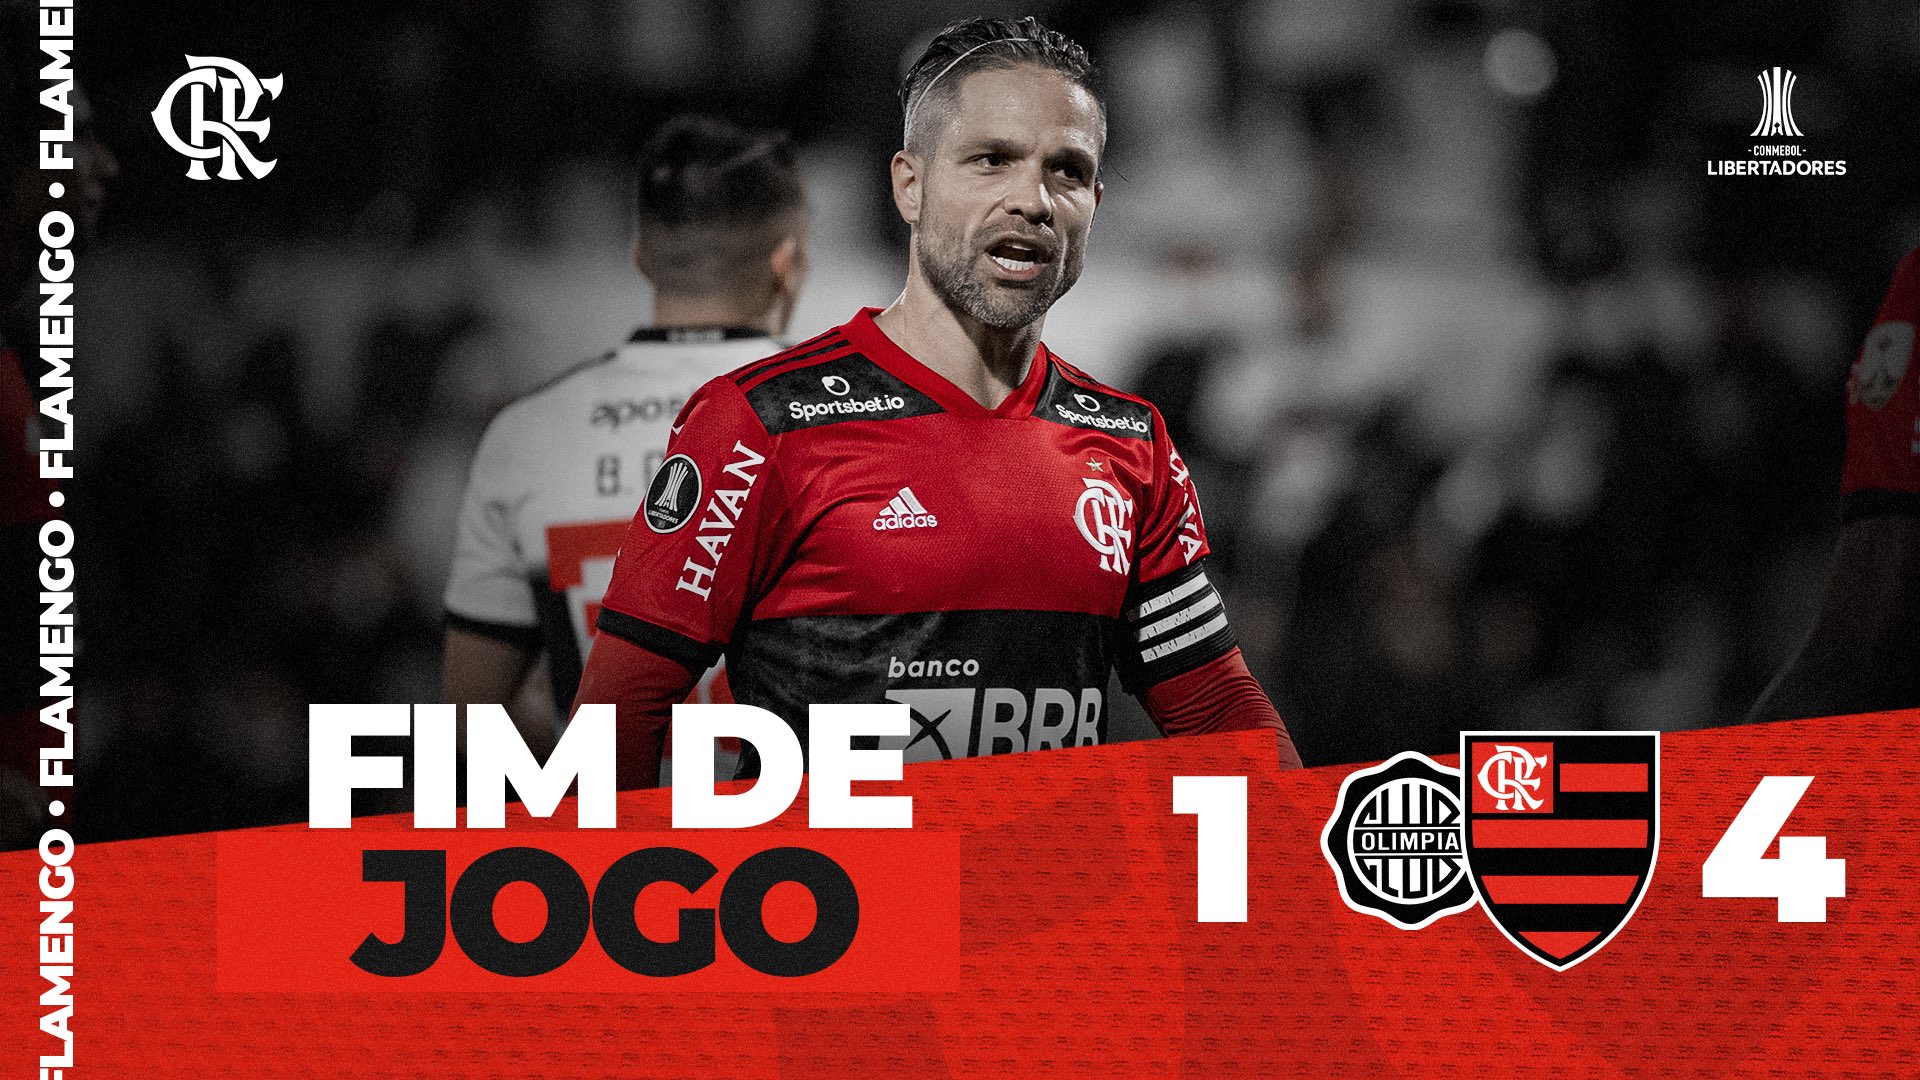 Flamengo x Corinthians - AO VIVO  CONMEBOL Libertadores - QUARTAS DE FINAL  - JOGO 2 